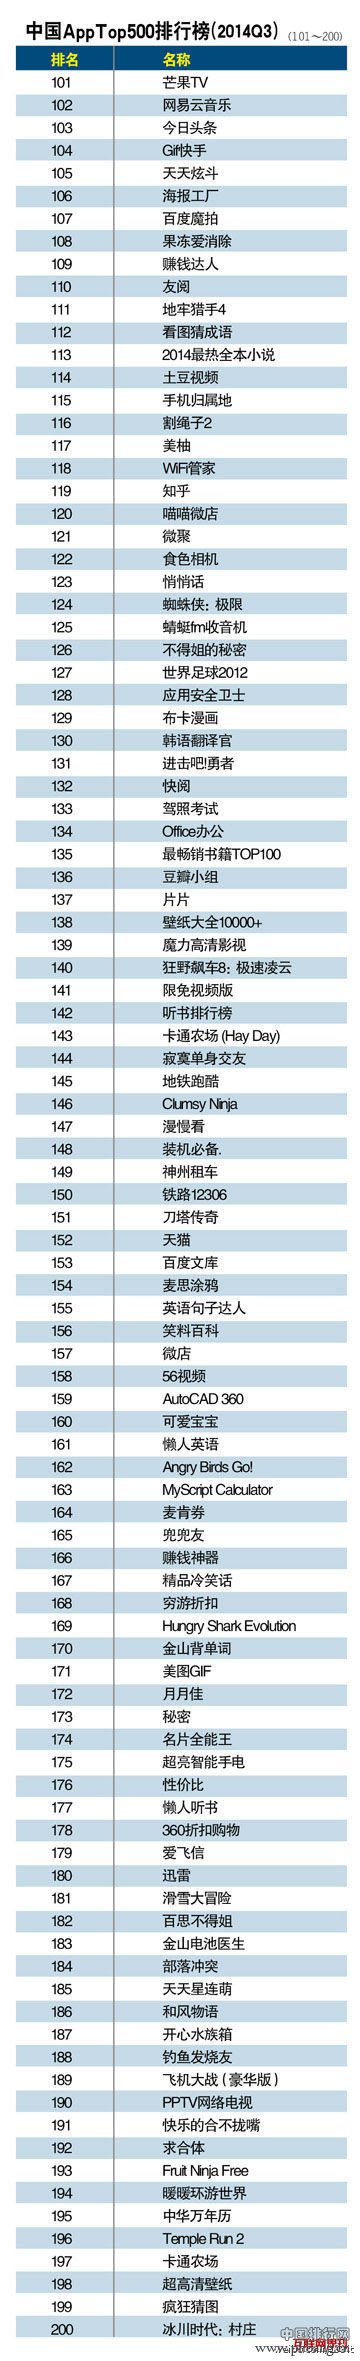 2014中国App排行榜Top500排名